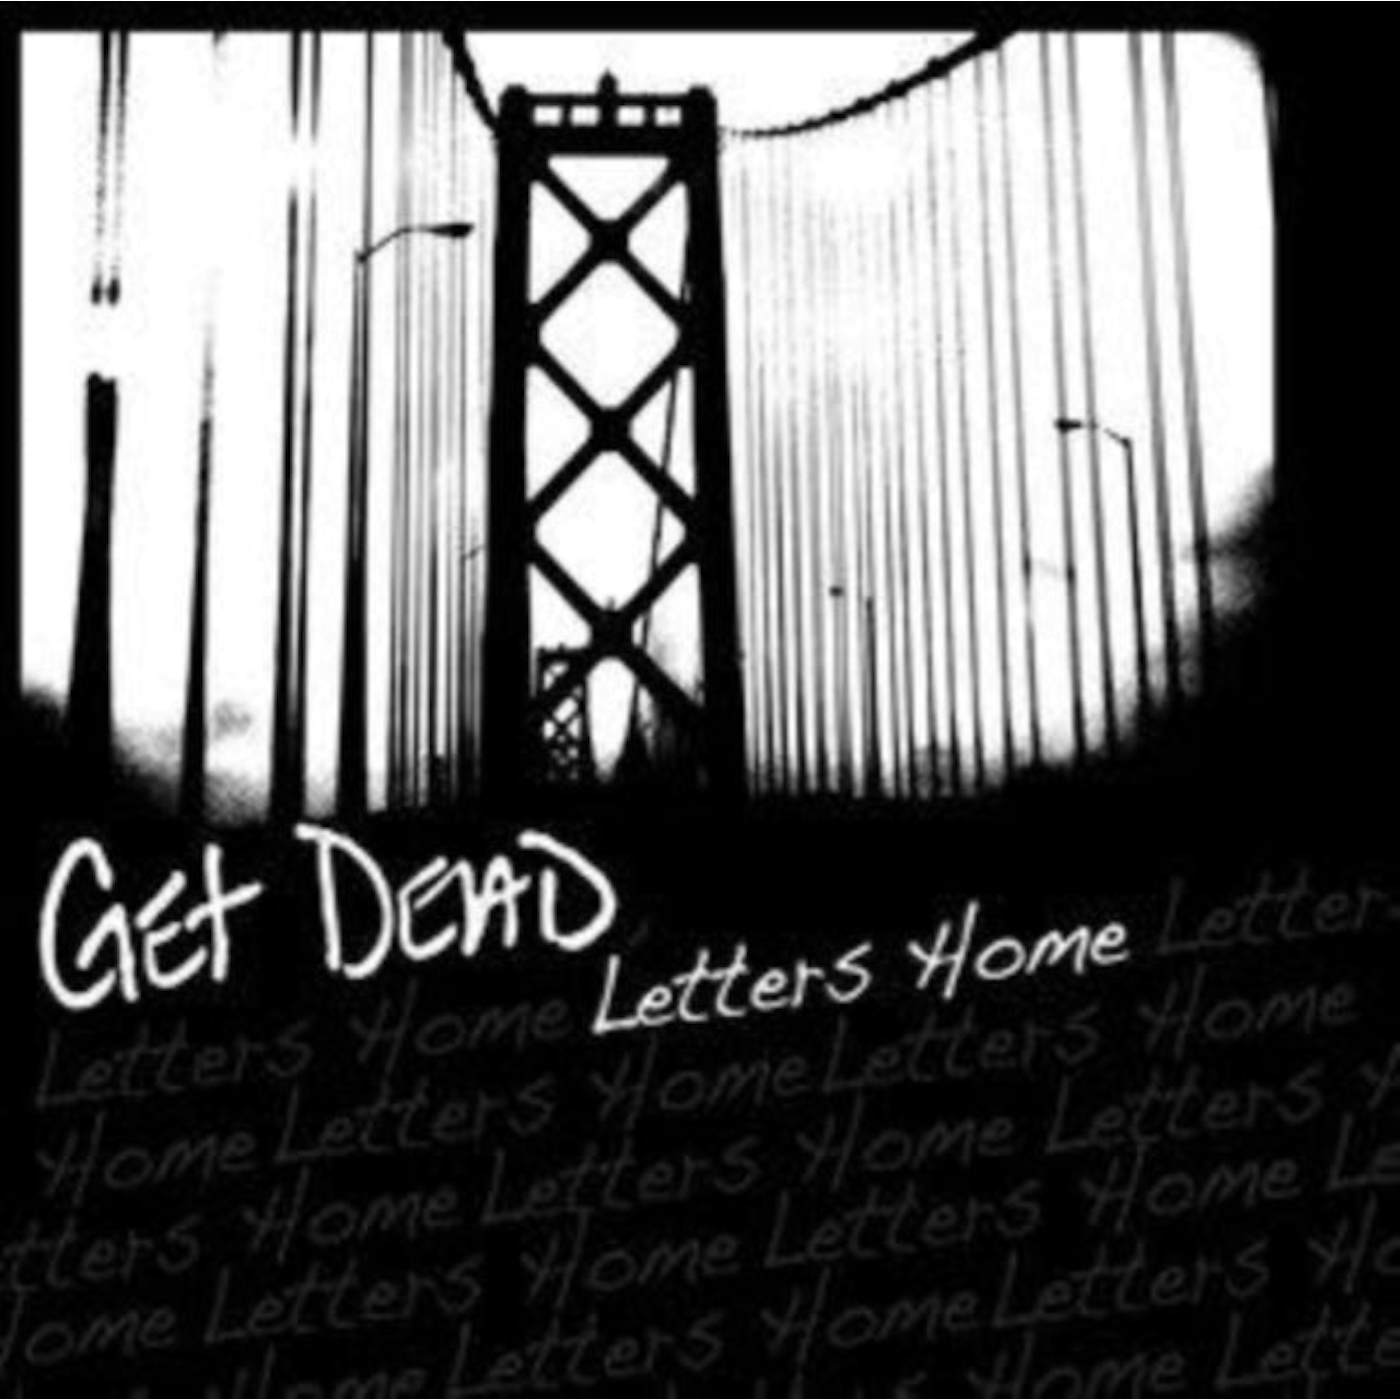 Get Dead LP - Letters Home (Vinyl)